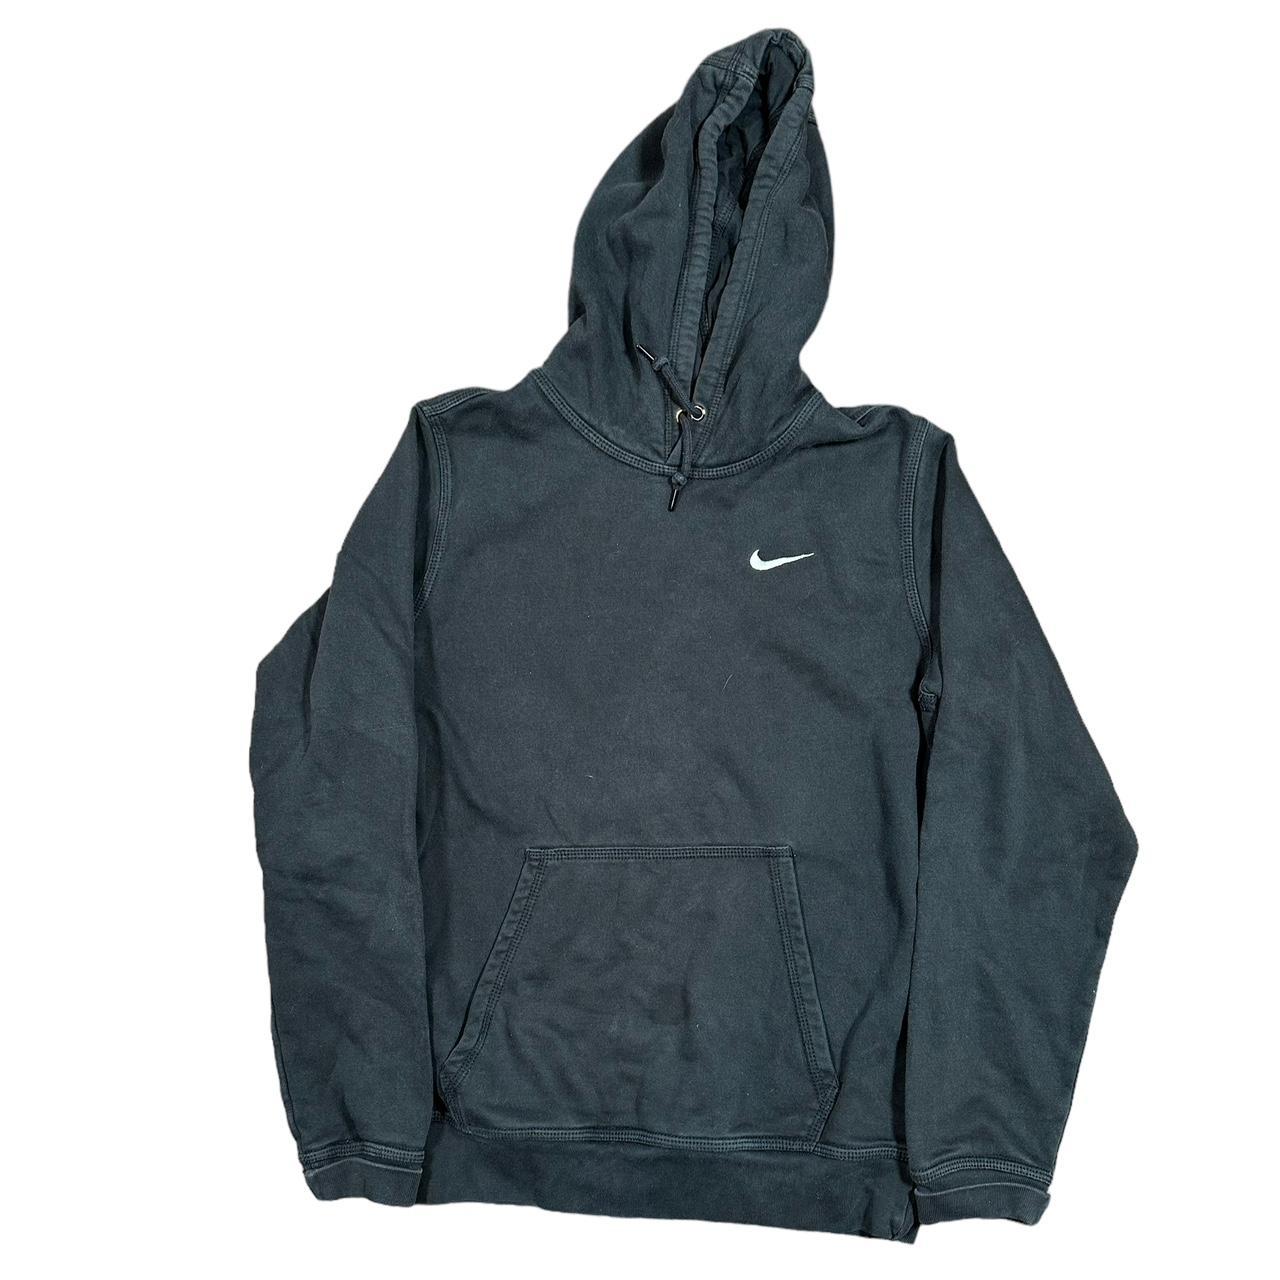 Nike hoodie Small stains - Depop